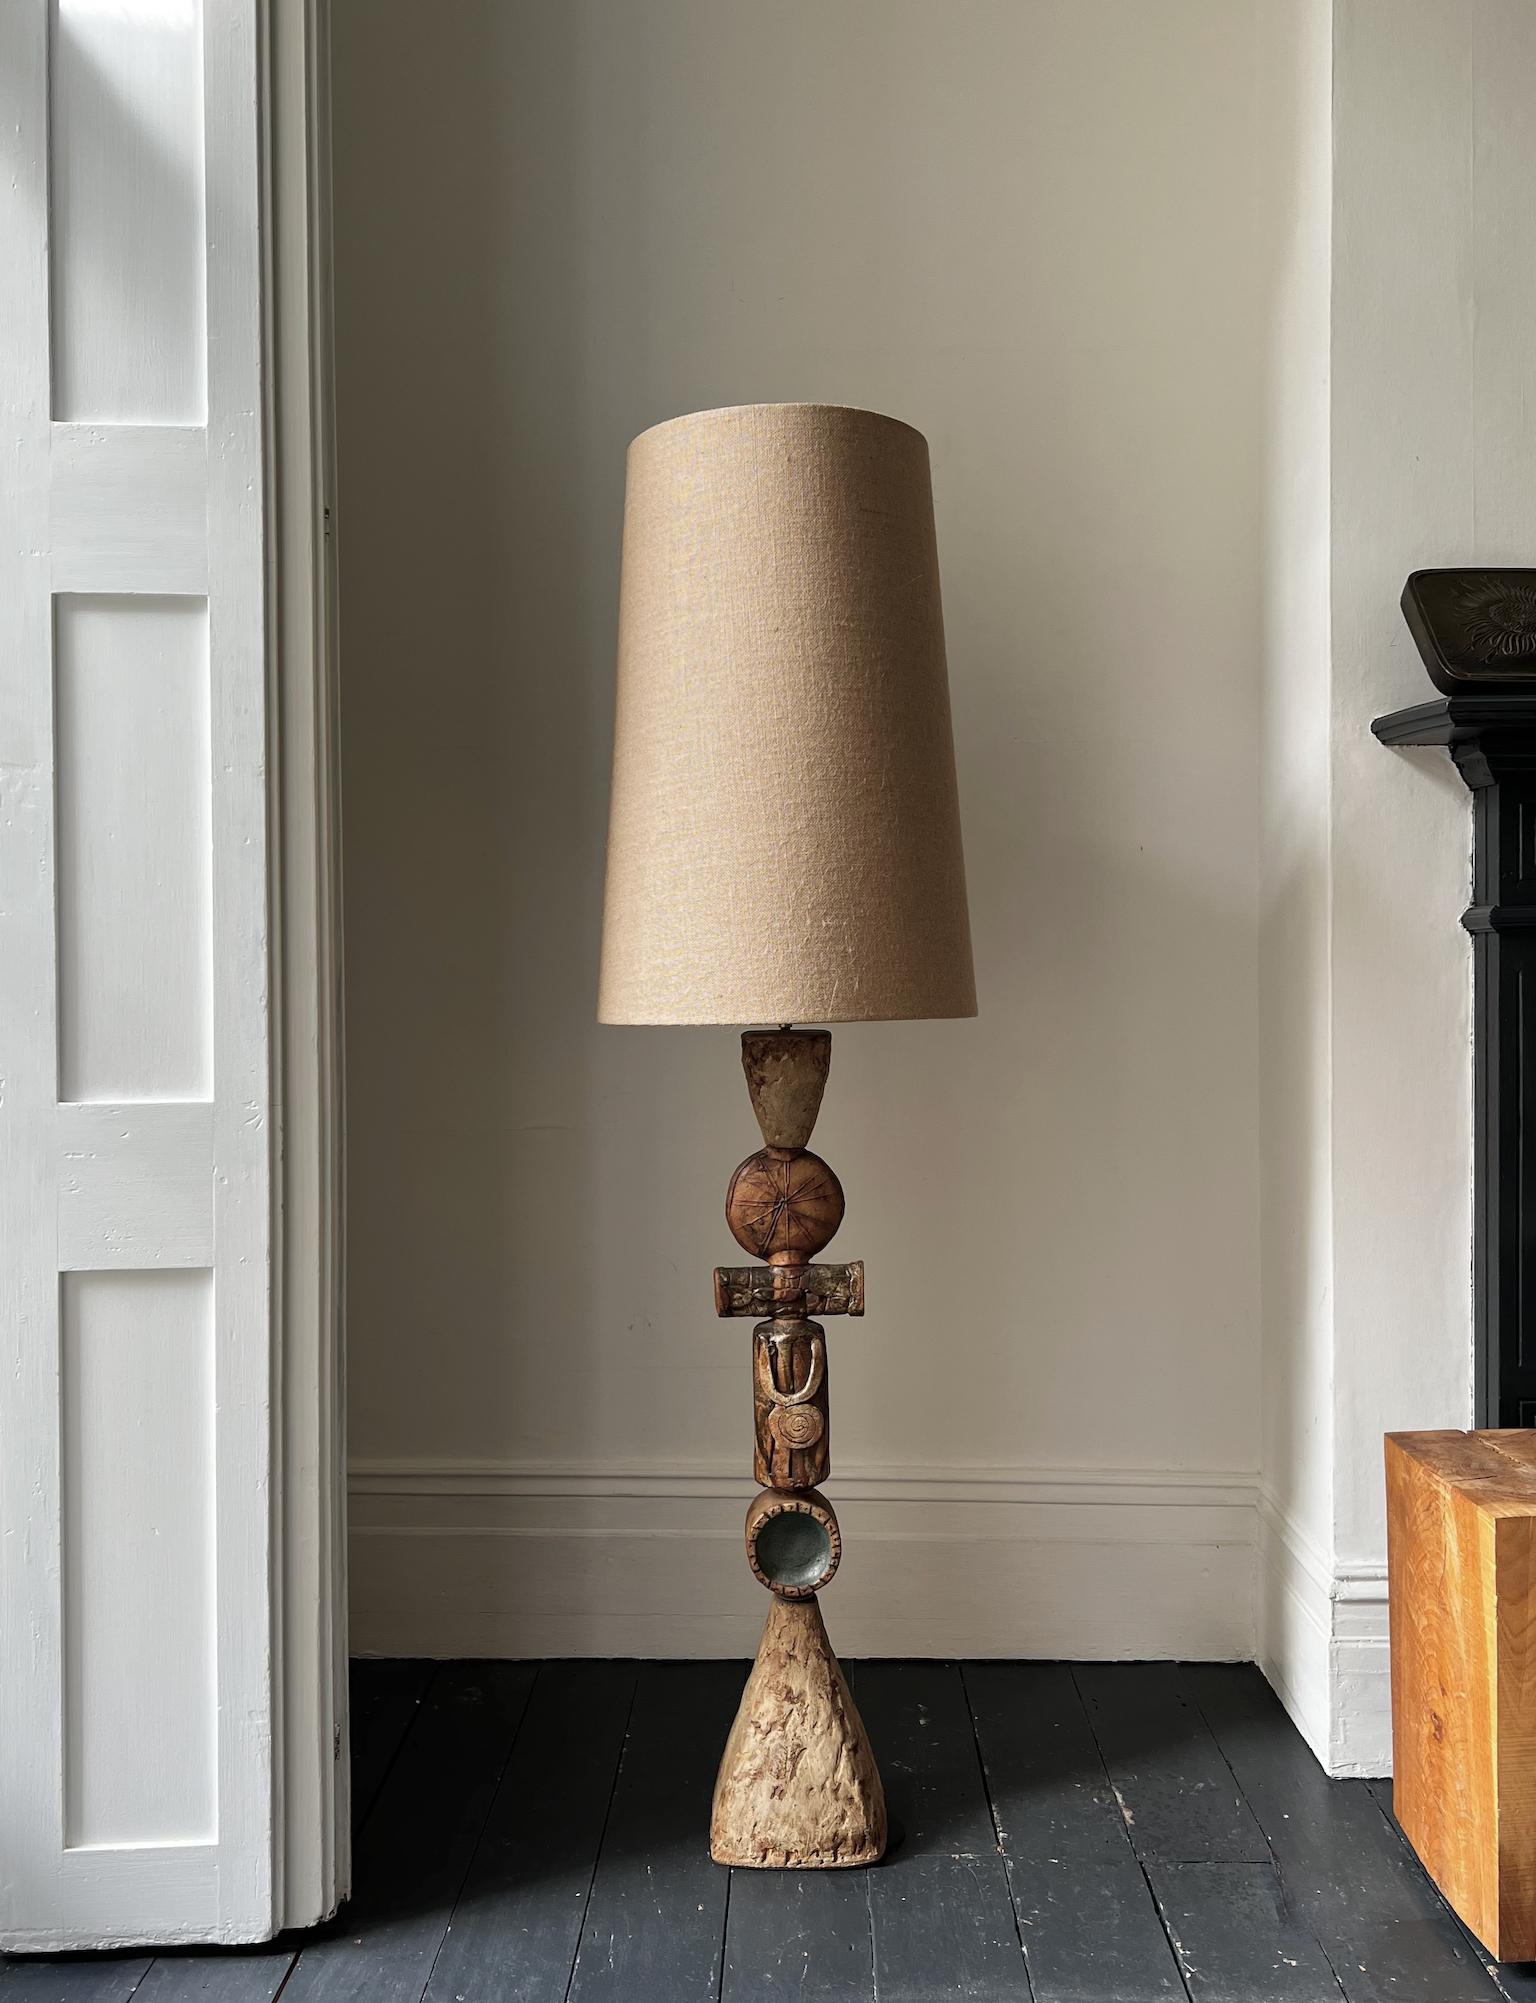 Lampe totem du milieu du 20e siècle du céramiste Bernard Rooke, Angleterre. 

Il s'agit d'une pièce ancienne, et il est inhabituel de voir cet exemple du travail de Rooke ; construit à la main, avec beaucoup de caractère dans des tons naturels de